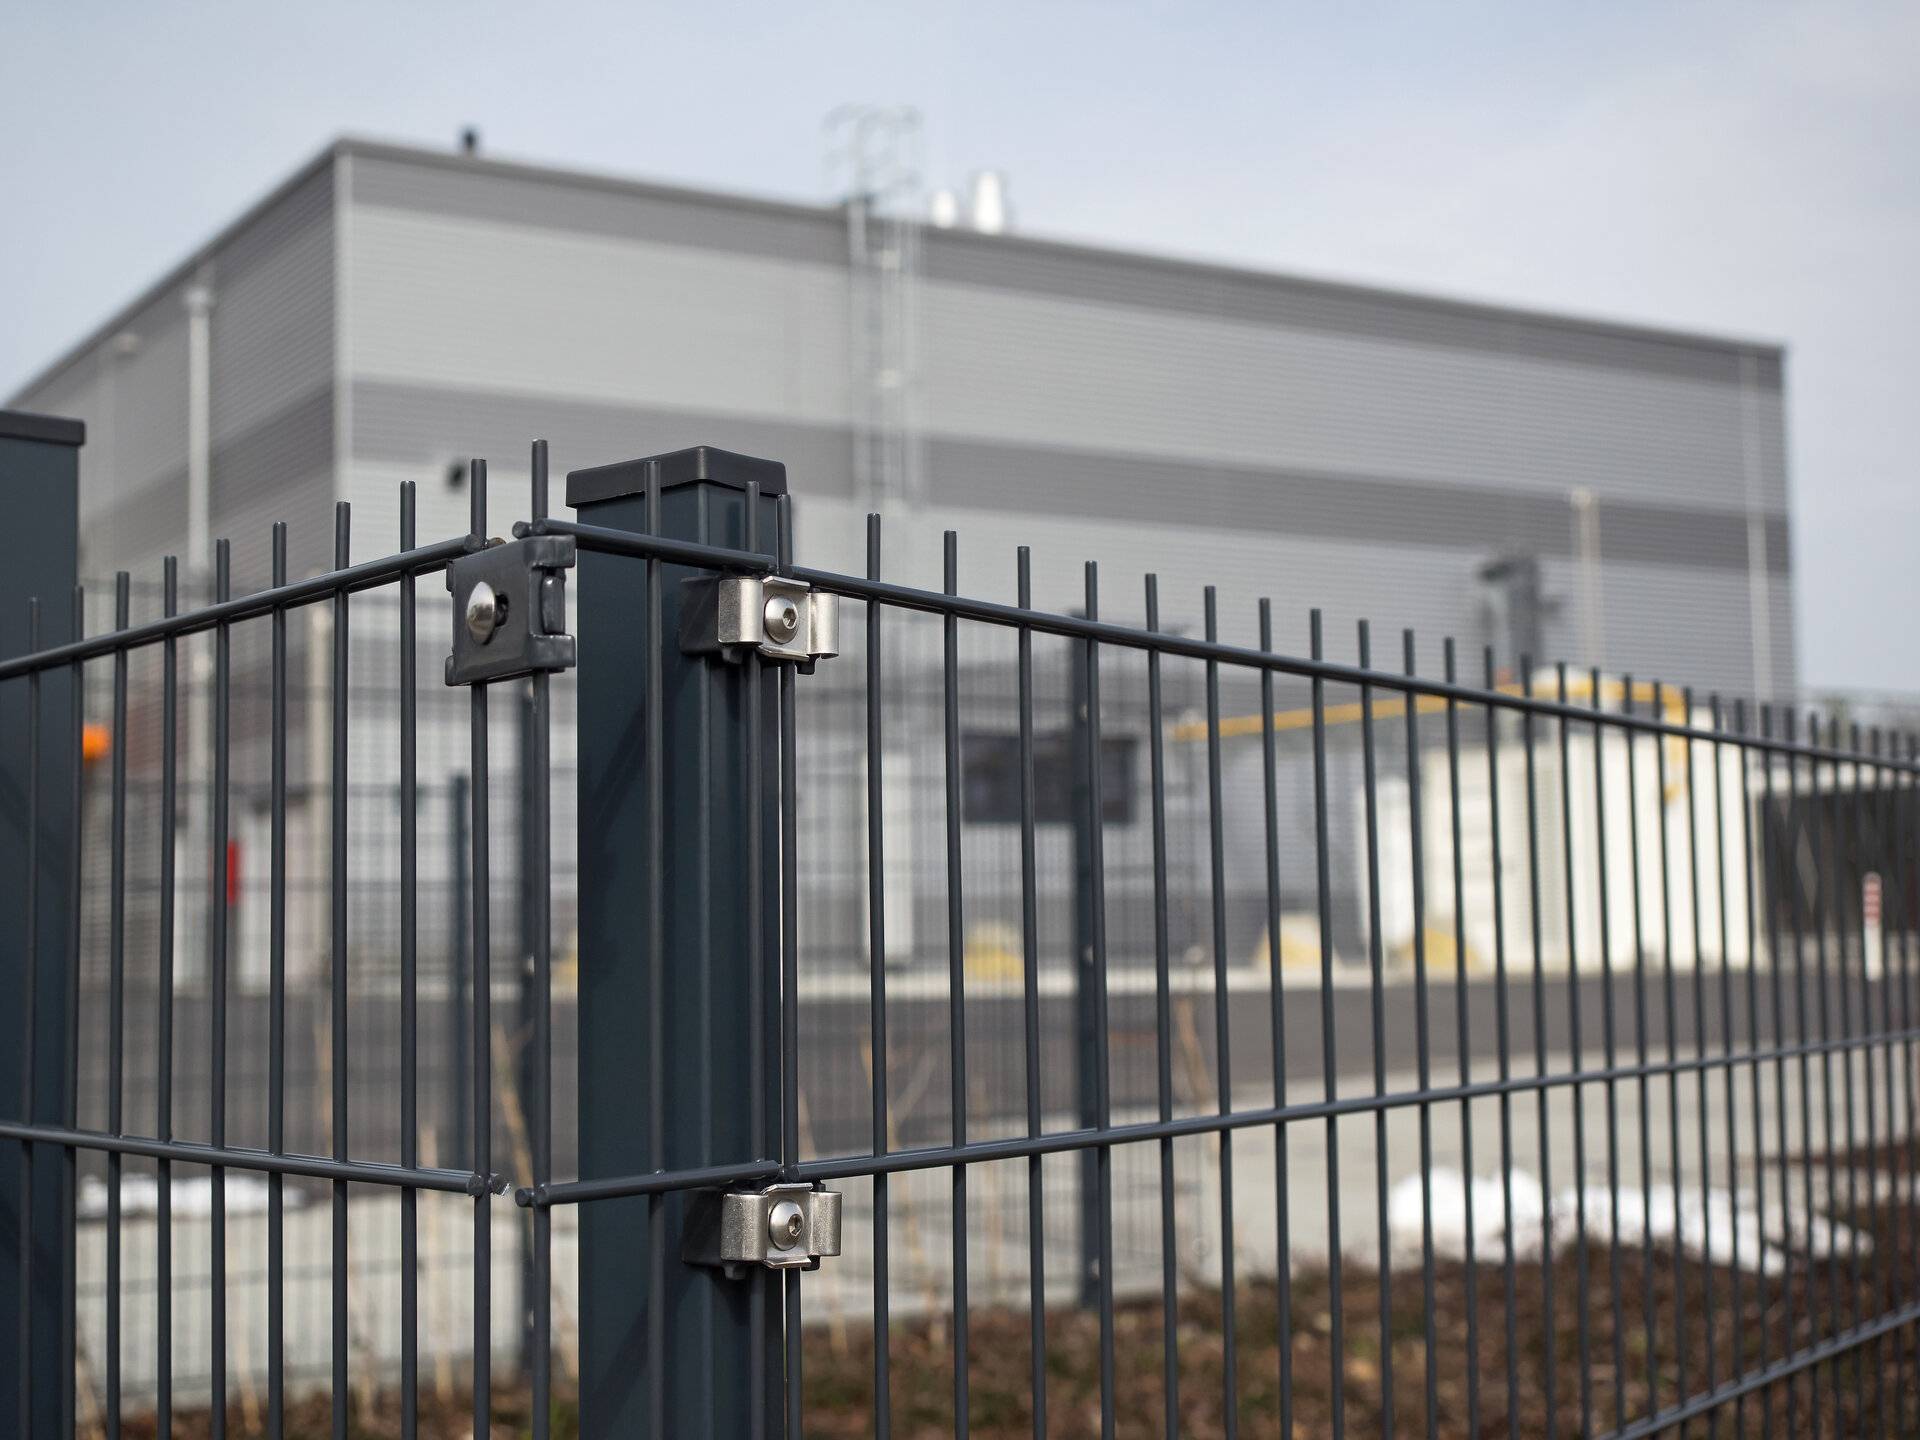 Blick auf einen Metall-Gitter-Zaun (Doppelstabmattenzaun), im Hintergrund hochmoderner Industrie- und Forschungsbetrieb (High-Tech-Unternehmen der Automobilzulieferindustrie), Fokus auf Stahlpfosten im Vordergrund.